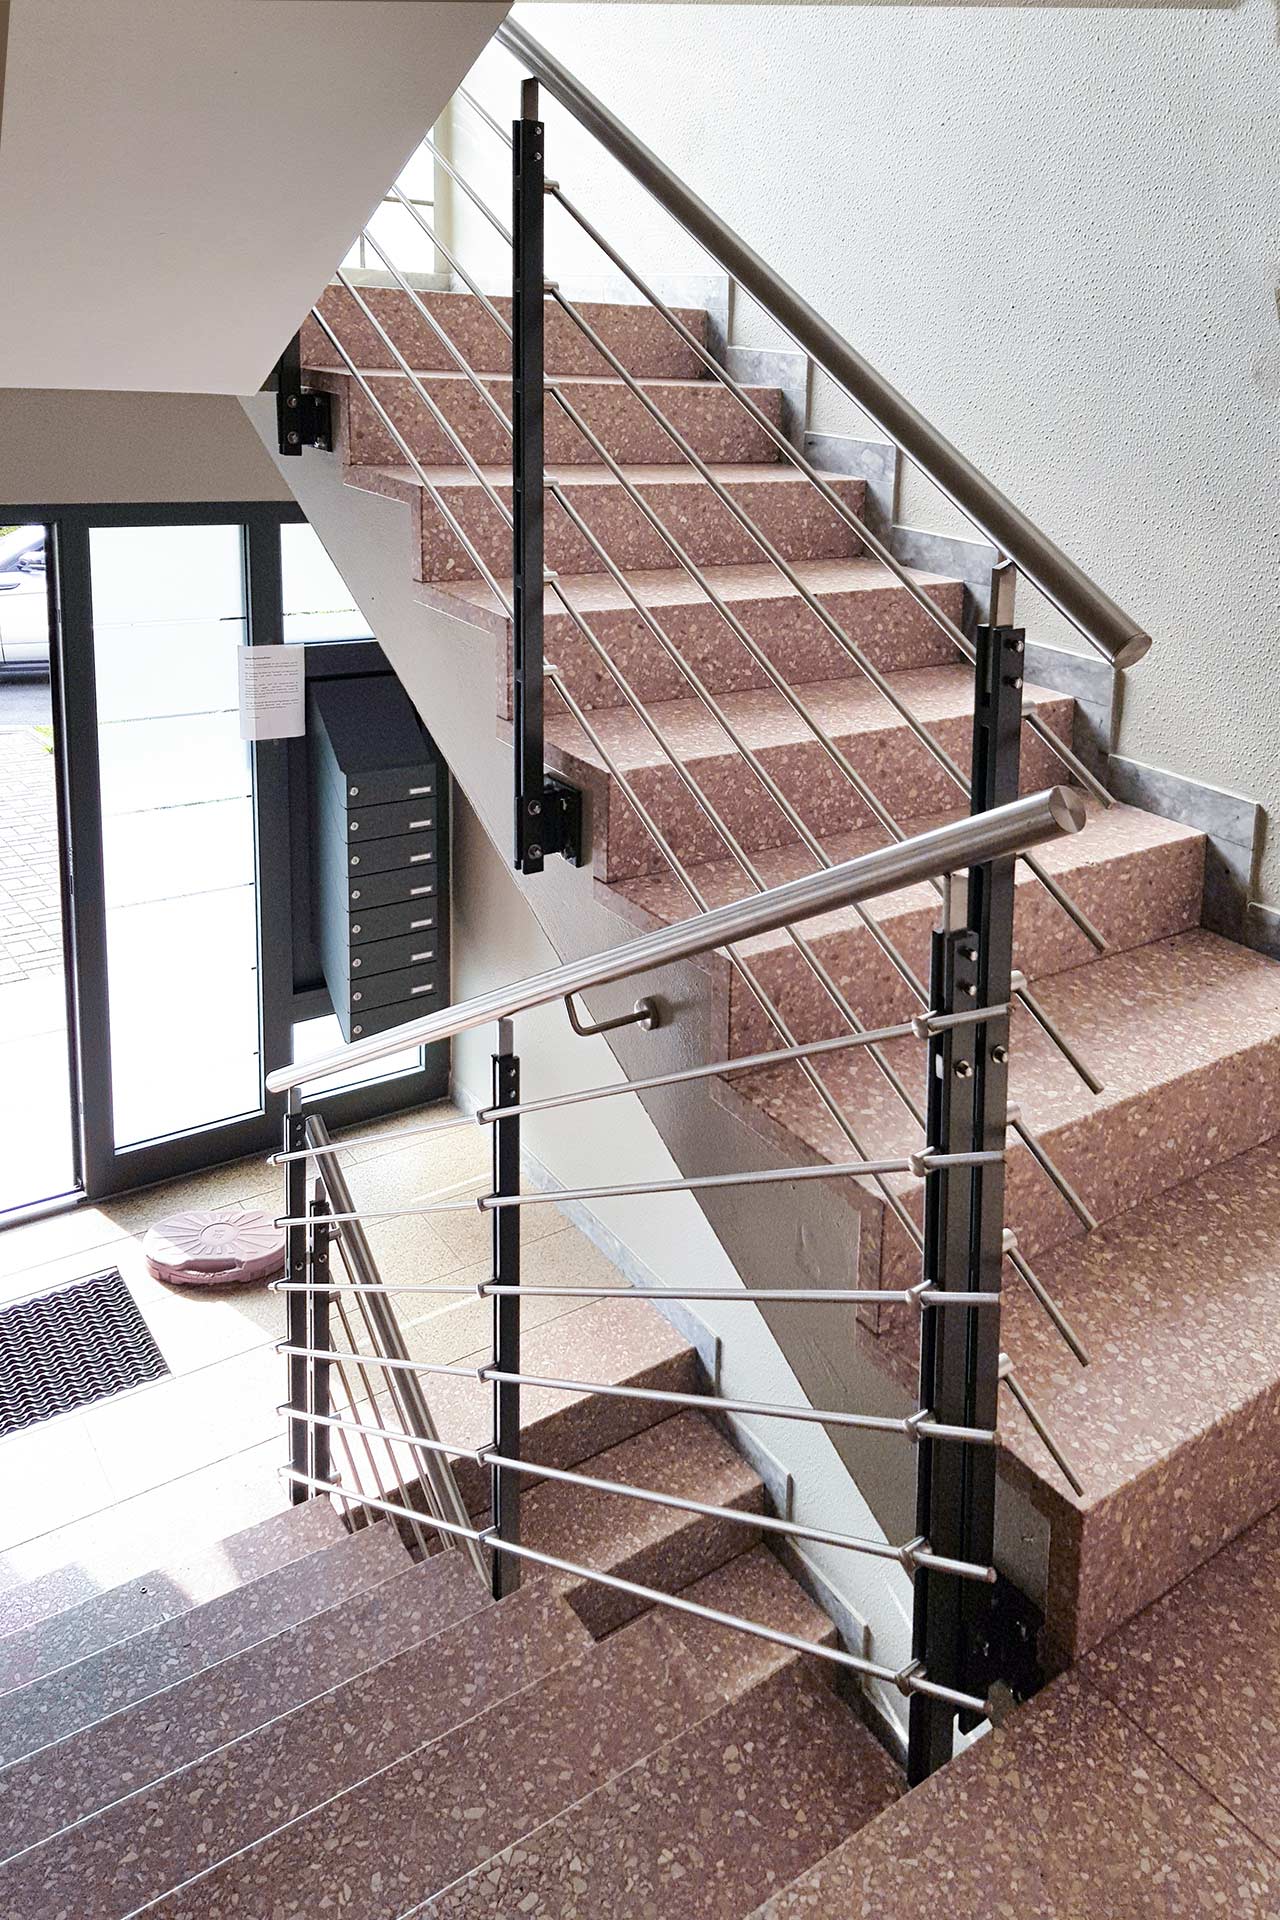 Edelstahlschlosserei Nappenfeld aus Mühlheim plant, fertigt und montiert Treppengeländer aus Edelstahl in einem Mehrfamilienhaus in Dortmund